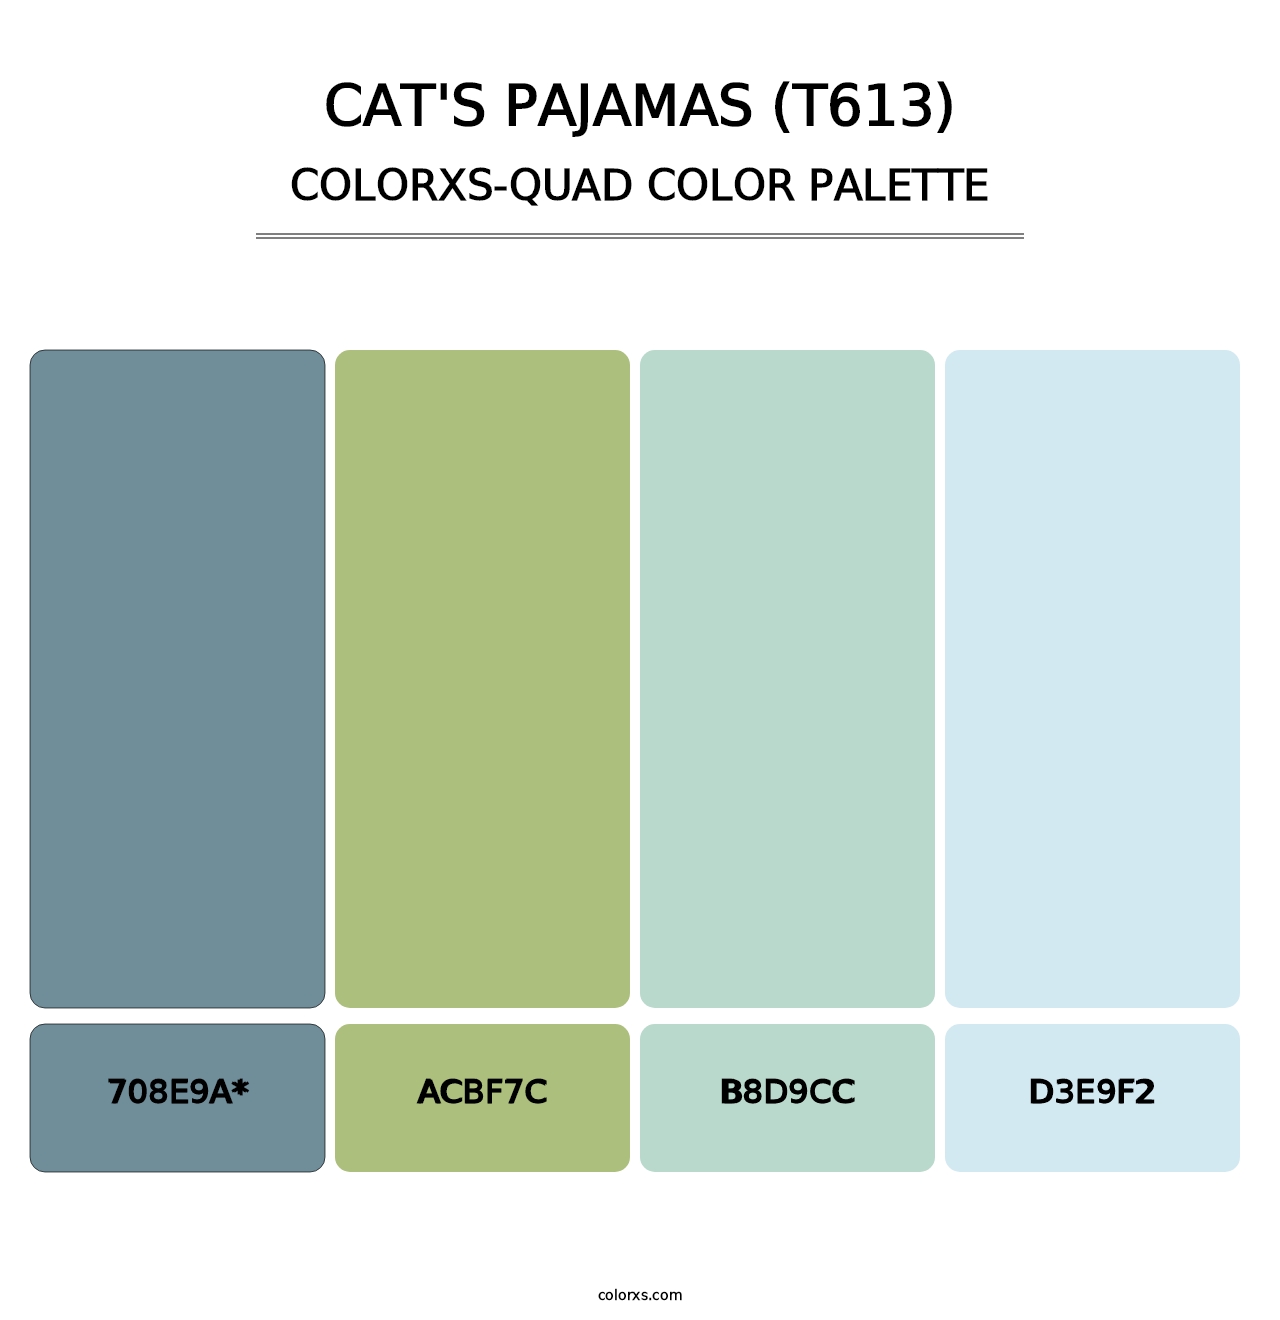 Cat's Pajamas (T613) - Colorxs Quad Palette